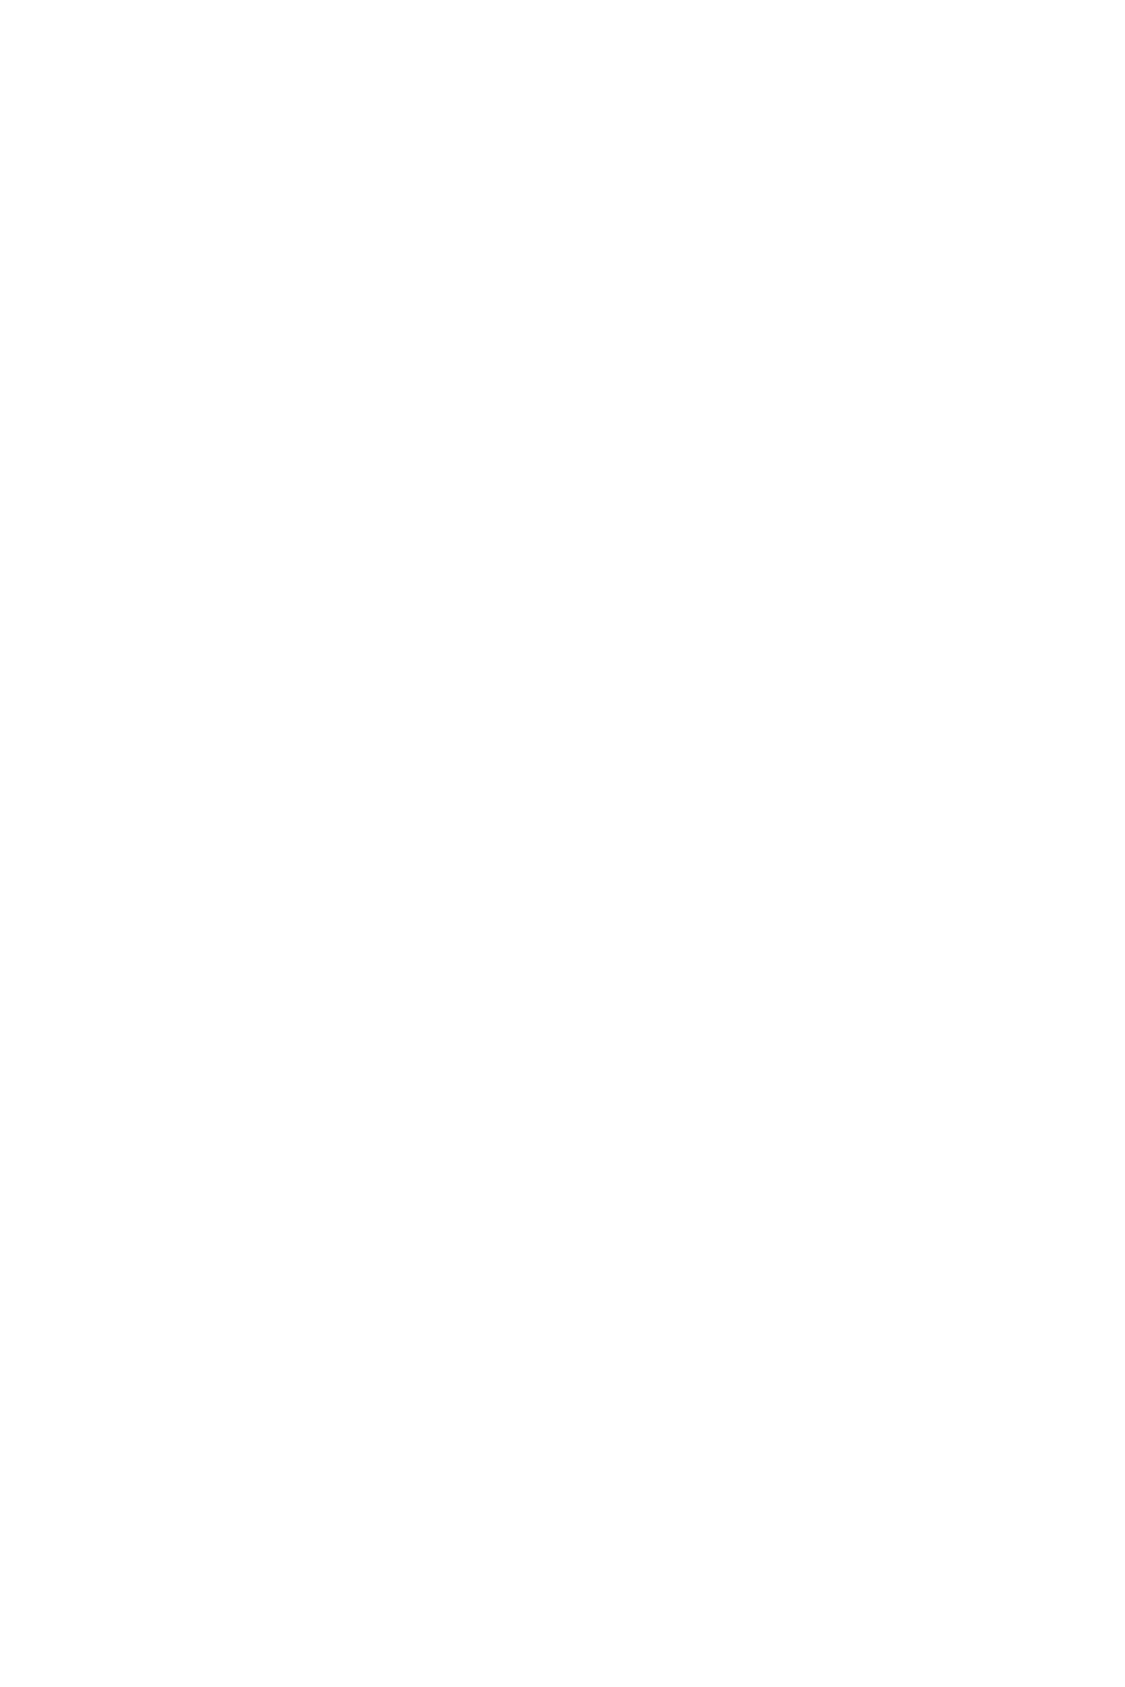 魔法戦士シンフォニックナイツ 〜女神を継ぐ乙女たち〜 CGノベル版 総集編 モザイク版 2ページ